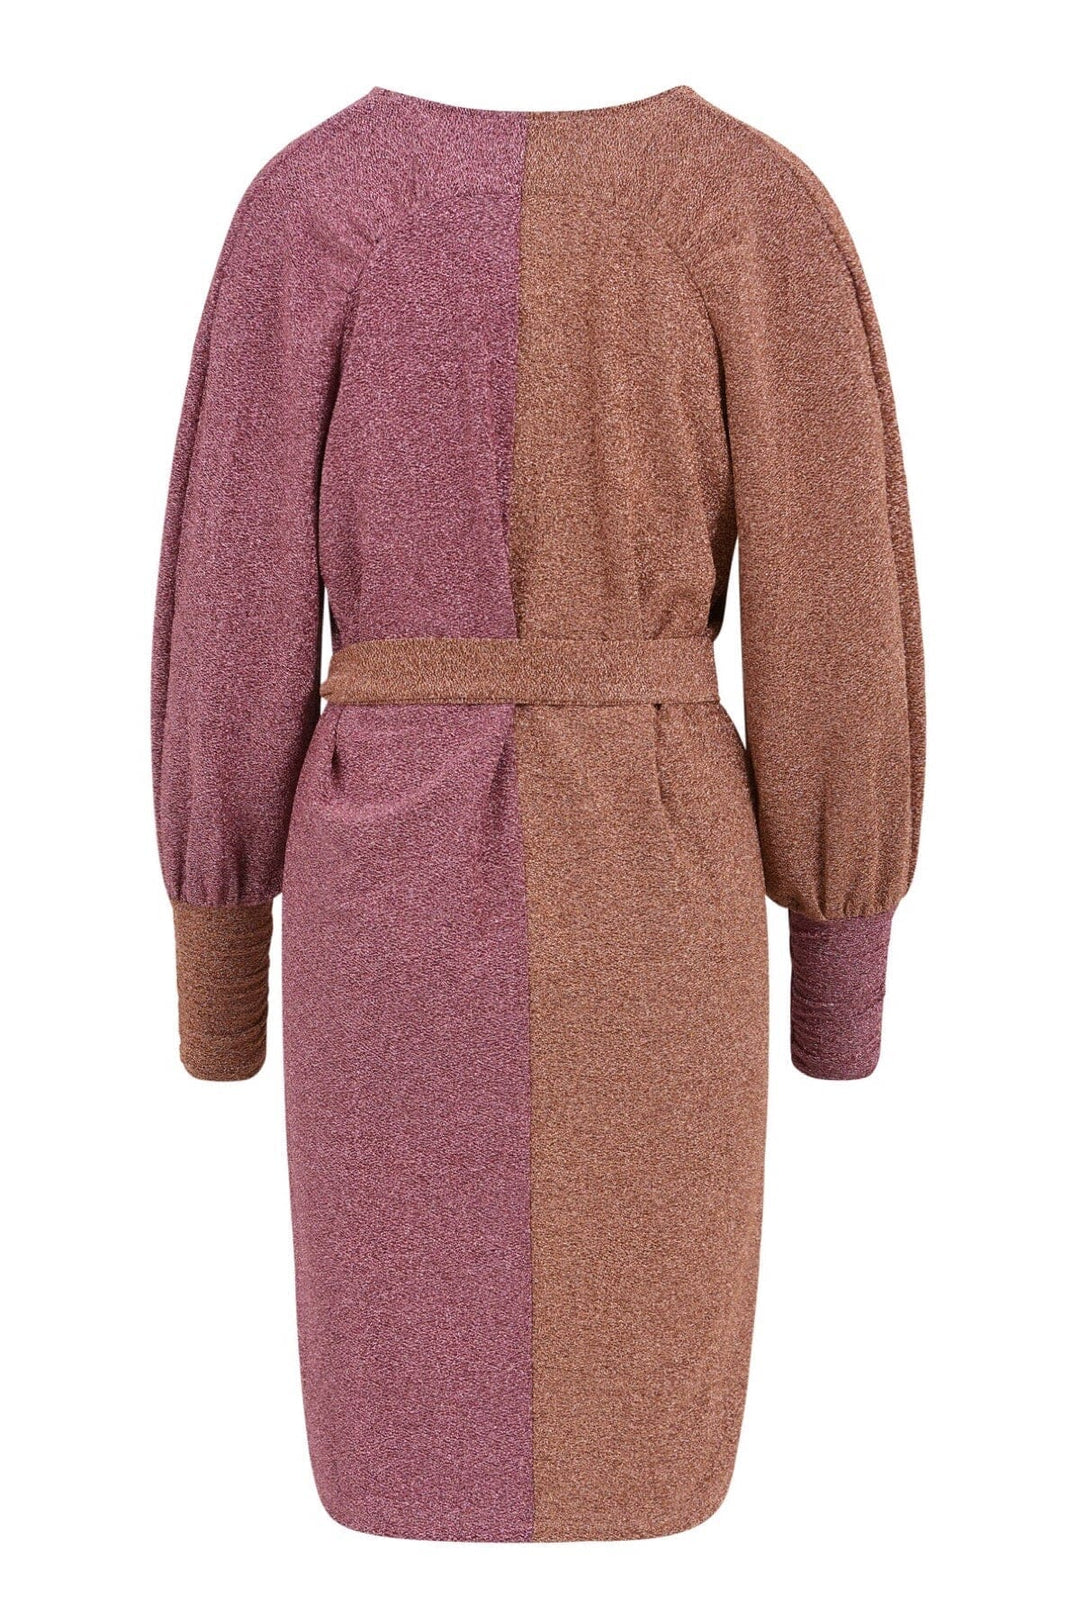 Robe avec mélange de paillettes Femme - Robe - Robe courte coster